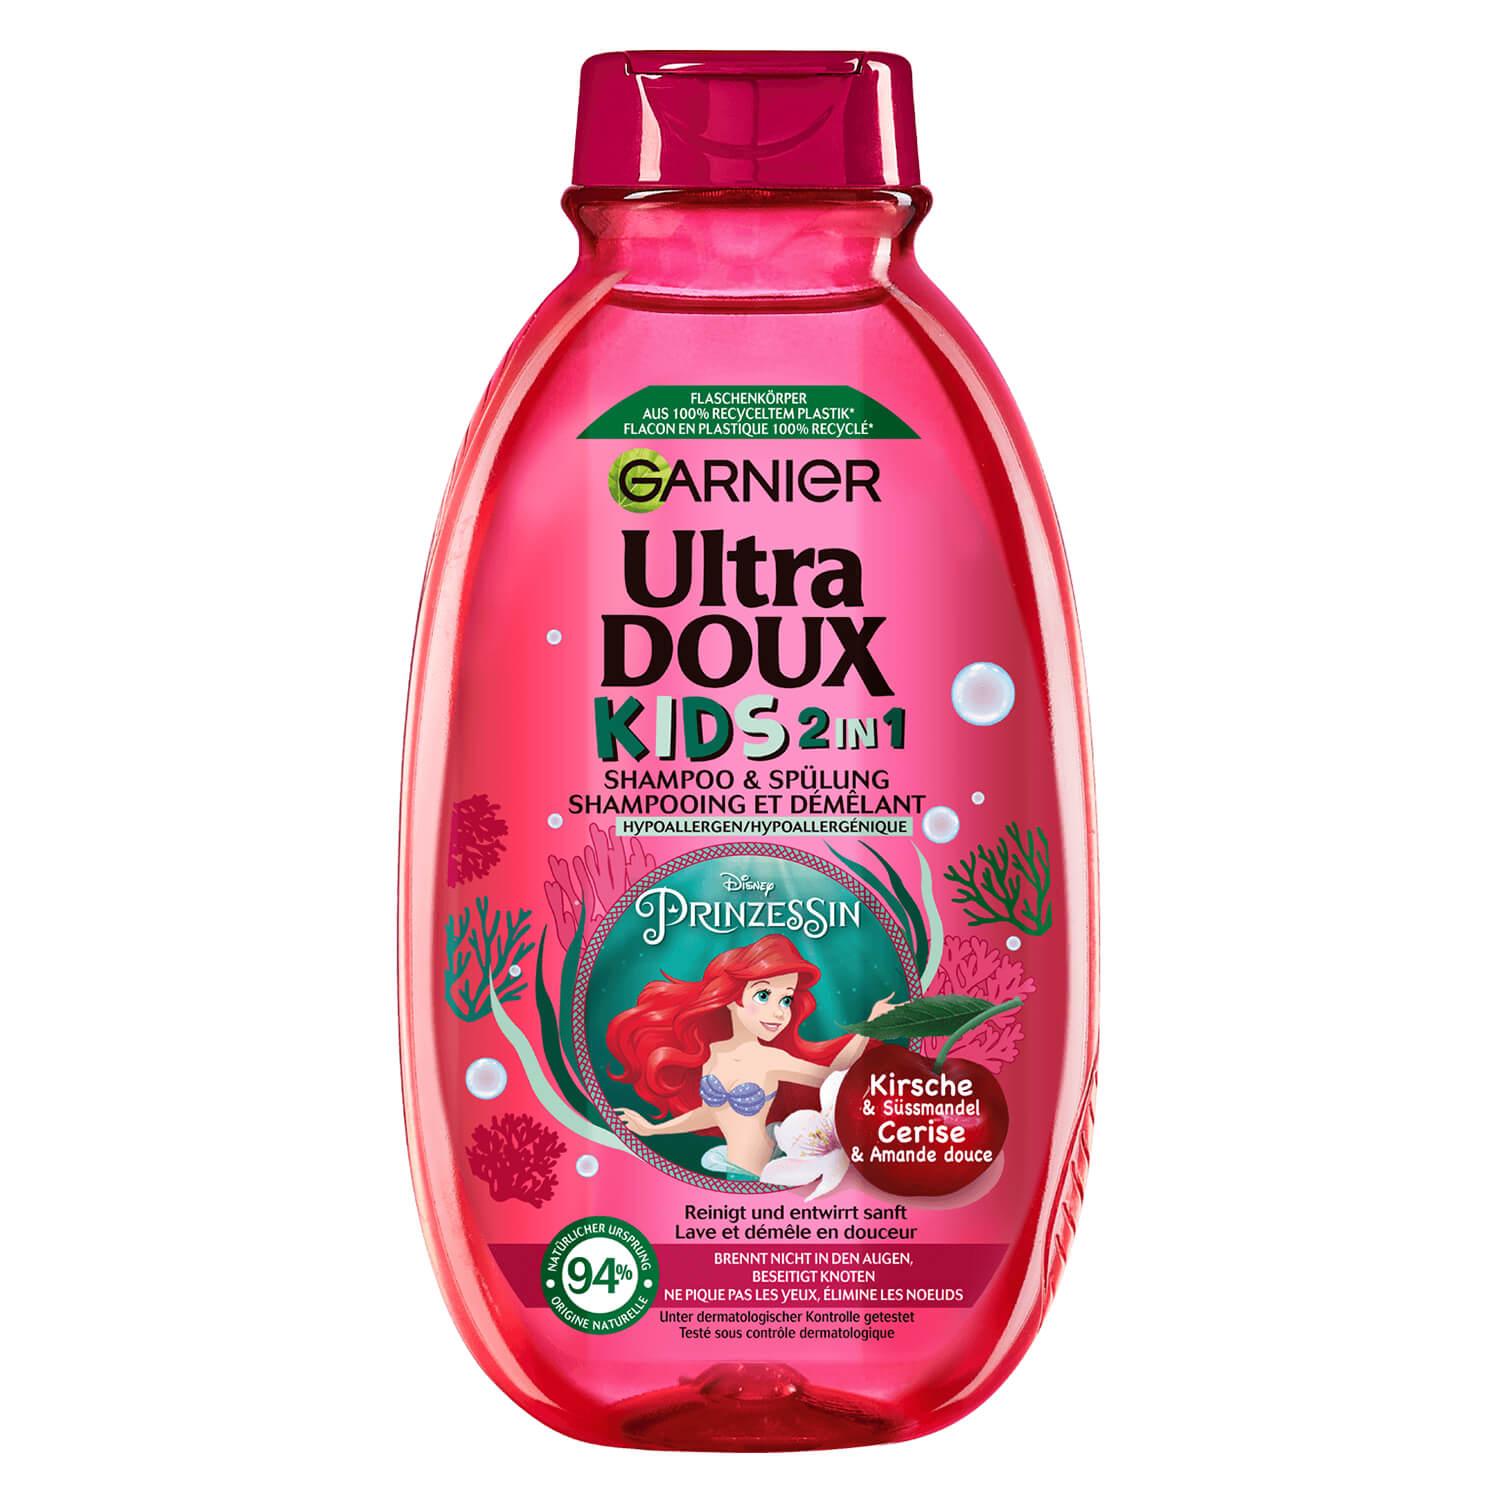 Ultra Doux Haircare - Kids 2in1 Shampoo & Spülung Kirsche & Süssmandel